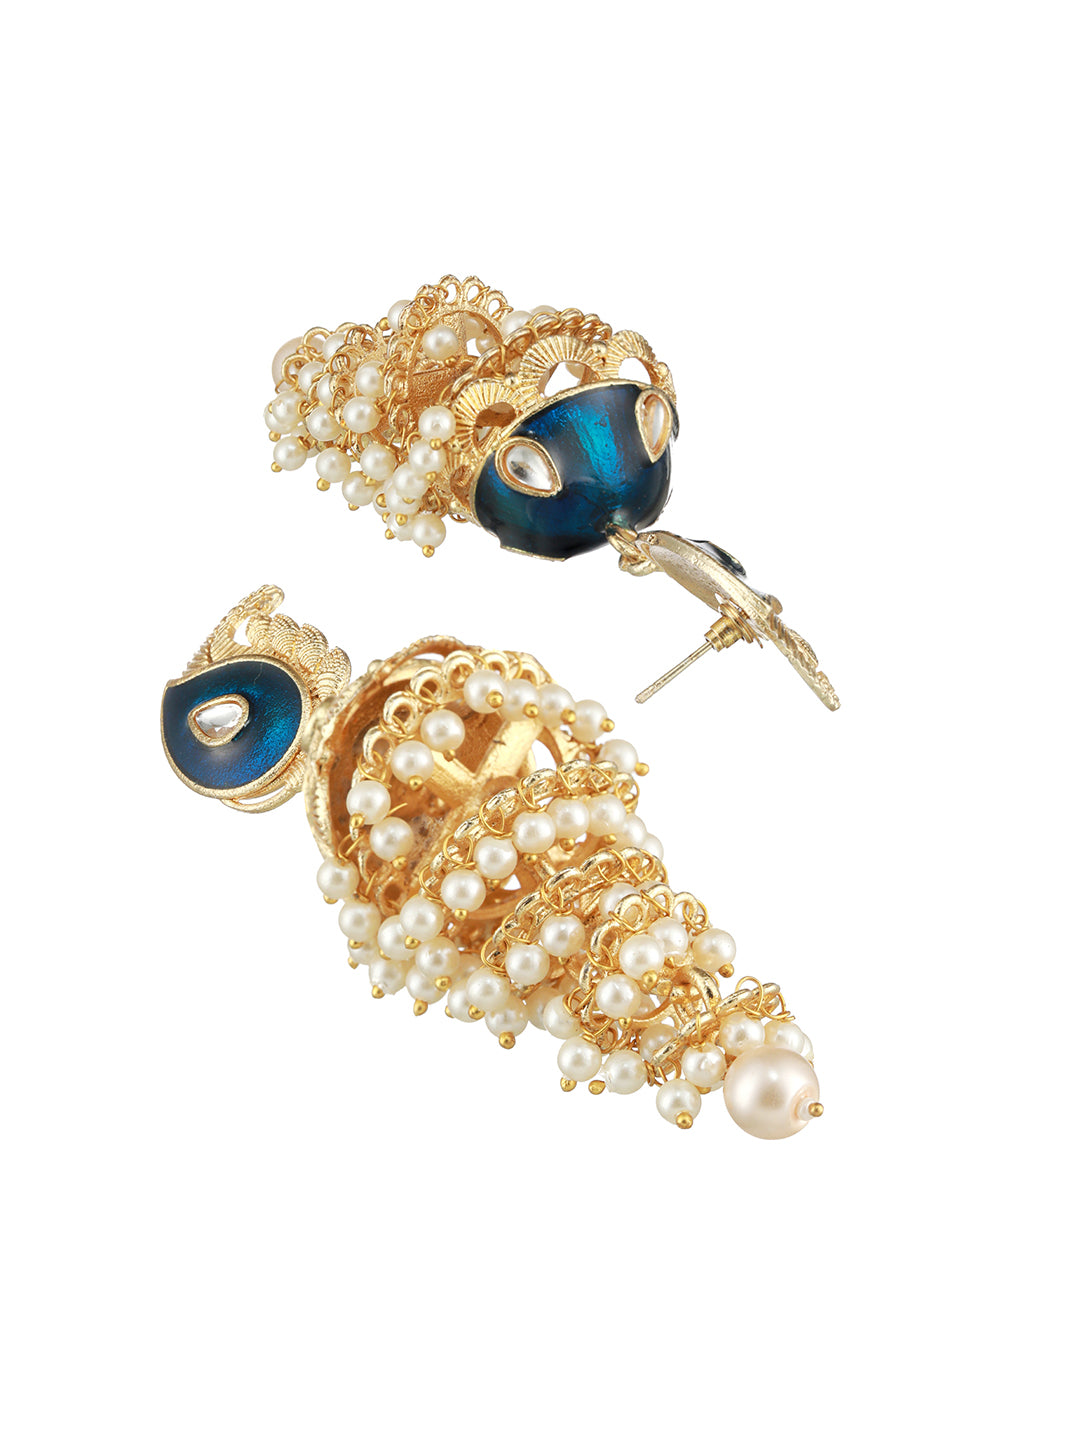 Blue Gold-Plated Kundan-Studded & Meenakari Jhumkas Earrings